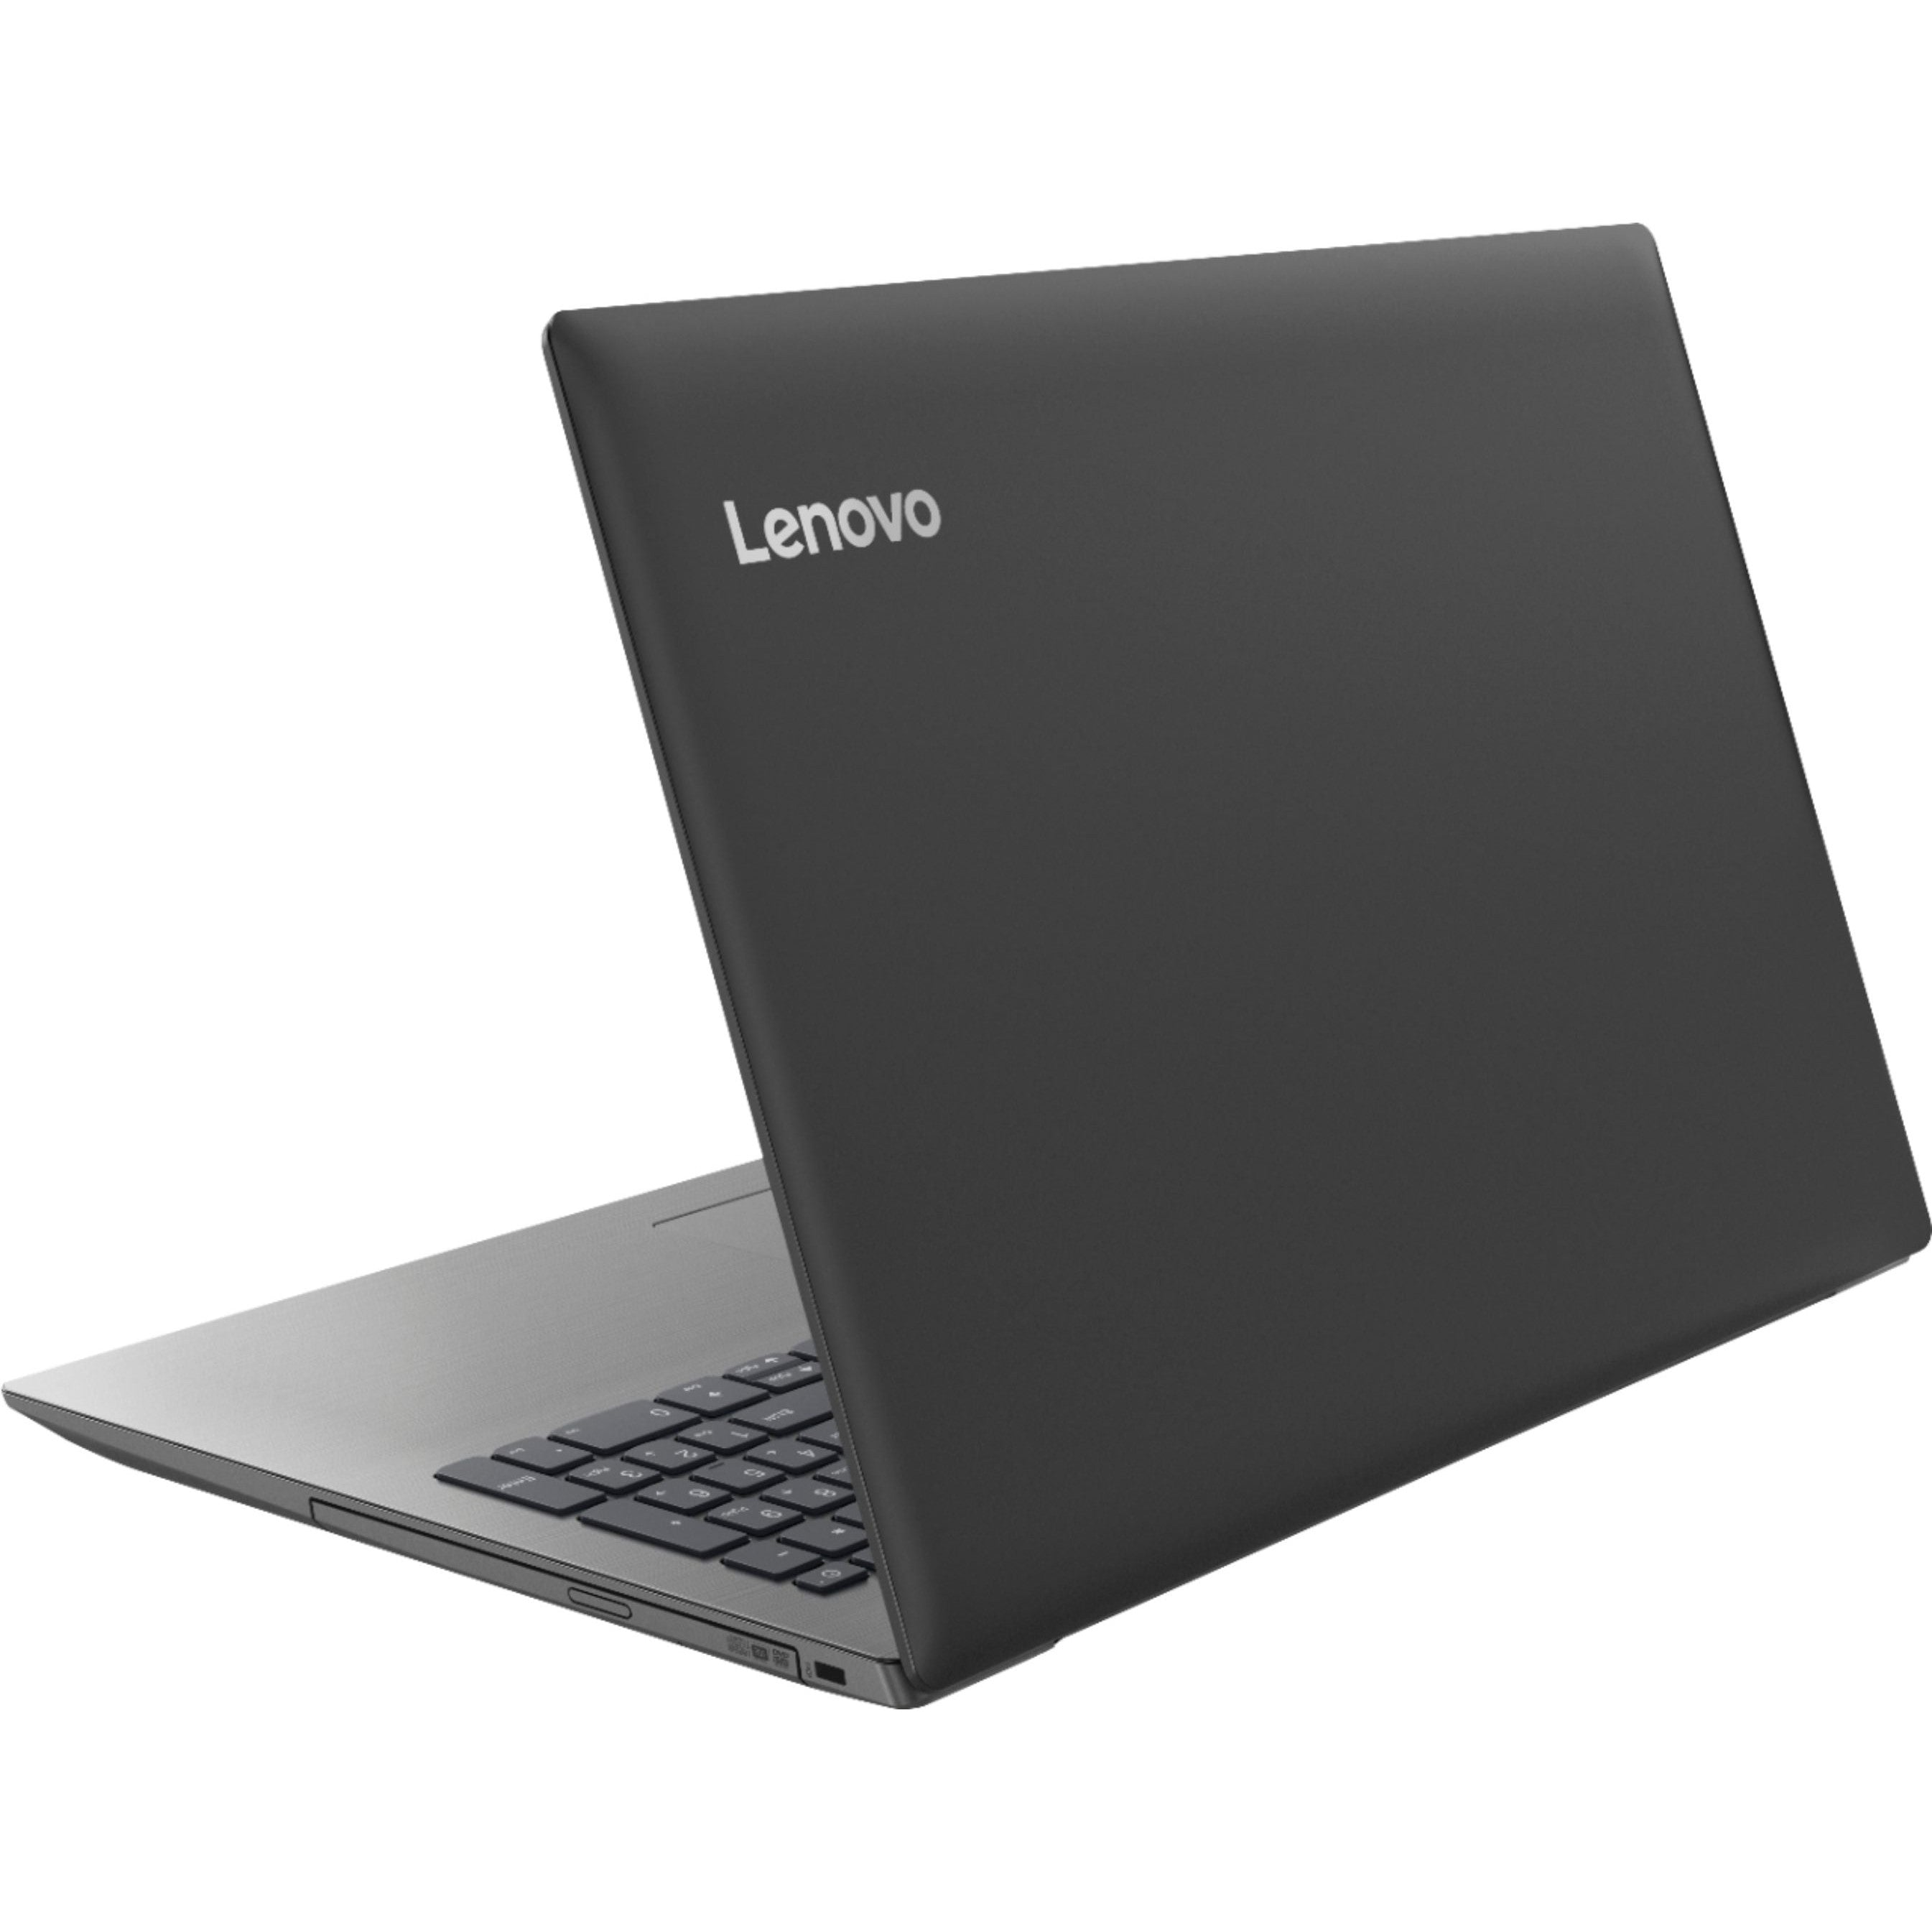 Lenovo IdeaPad 330-15ARR 15.6" Laptop AMD Ryzen 3 8GB RAM 1TB HDD - Grey